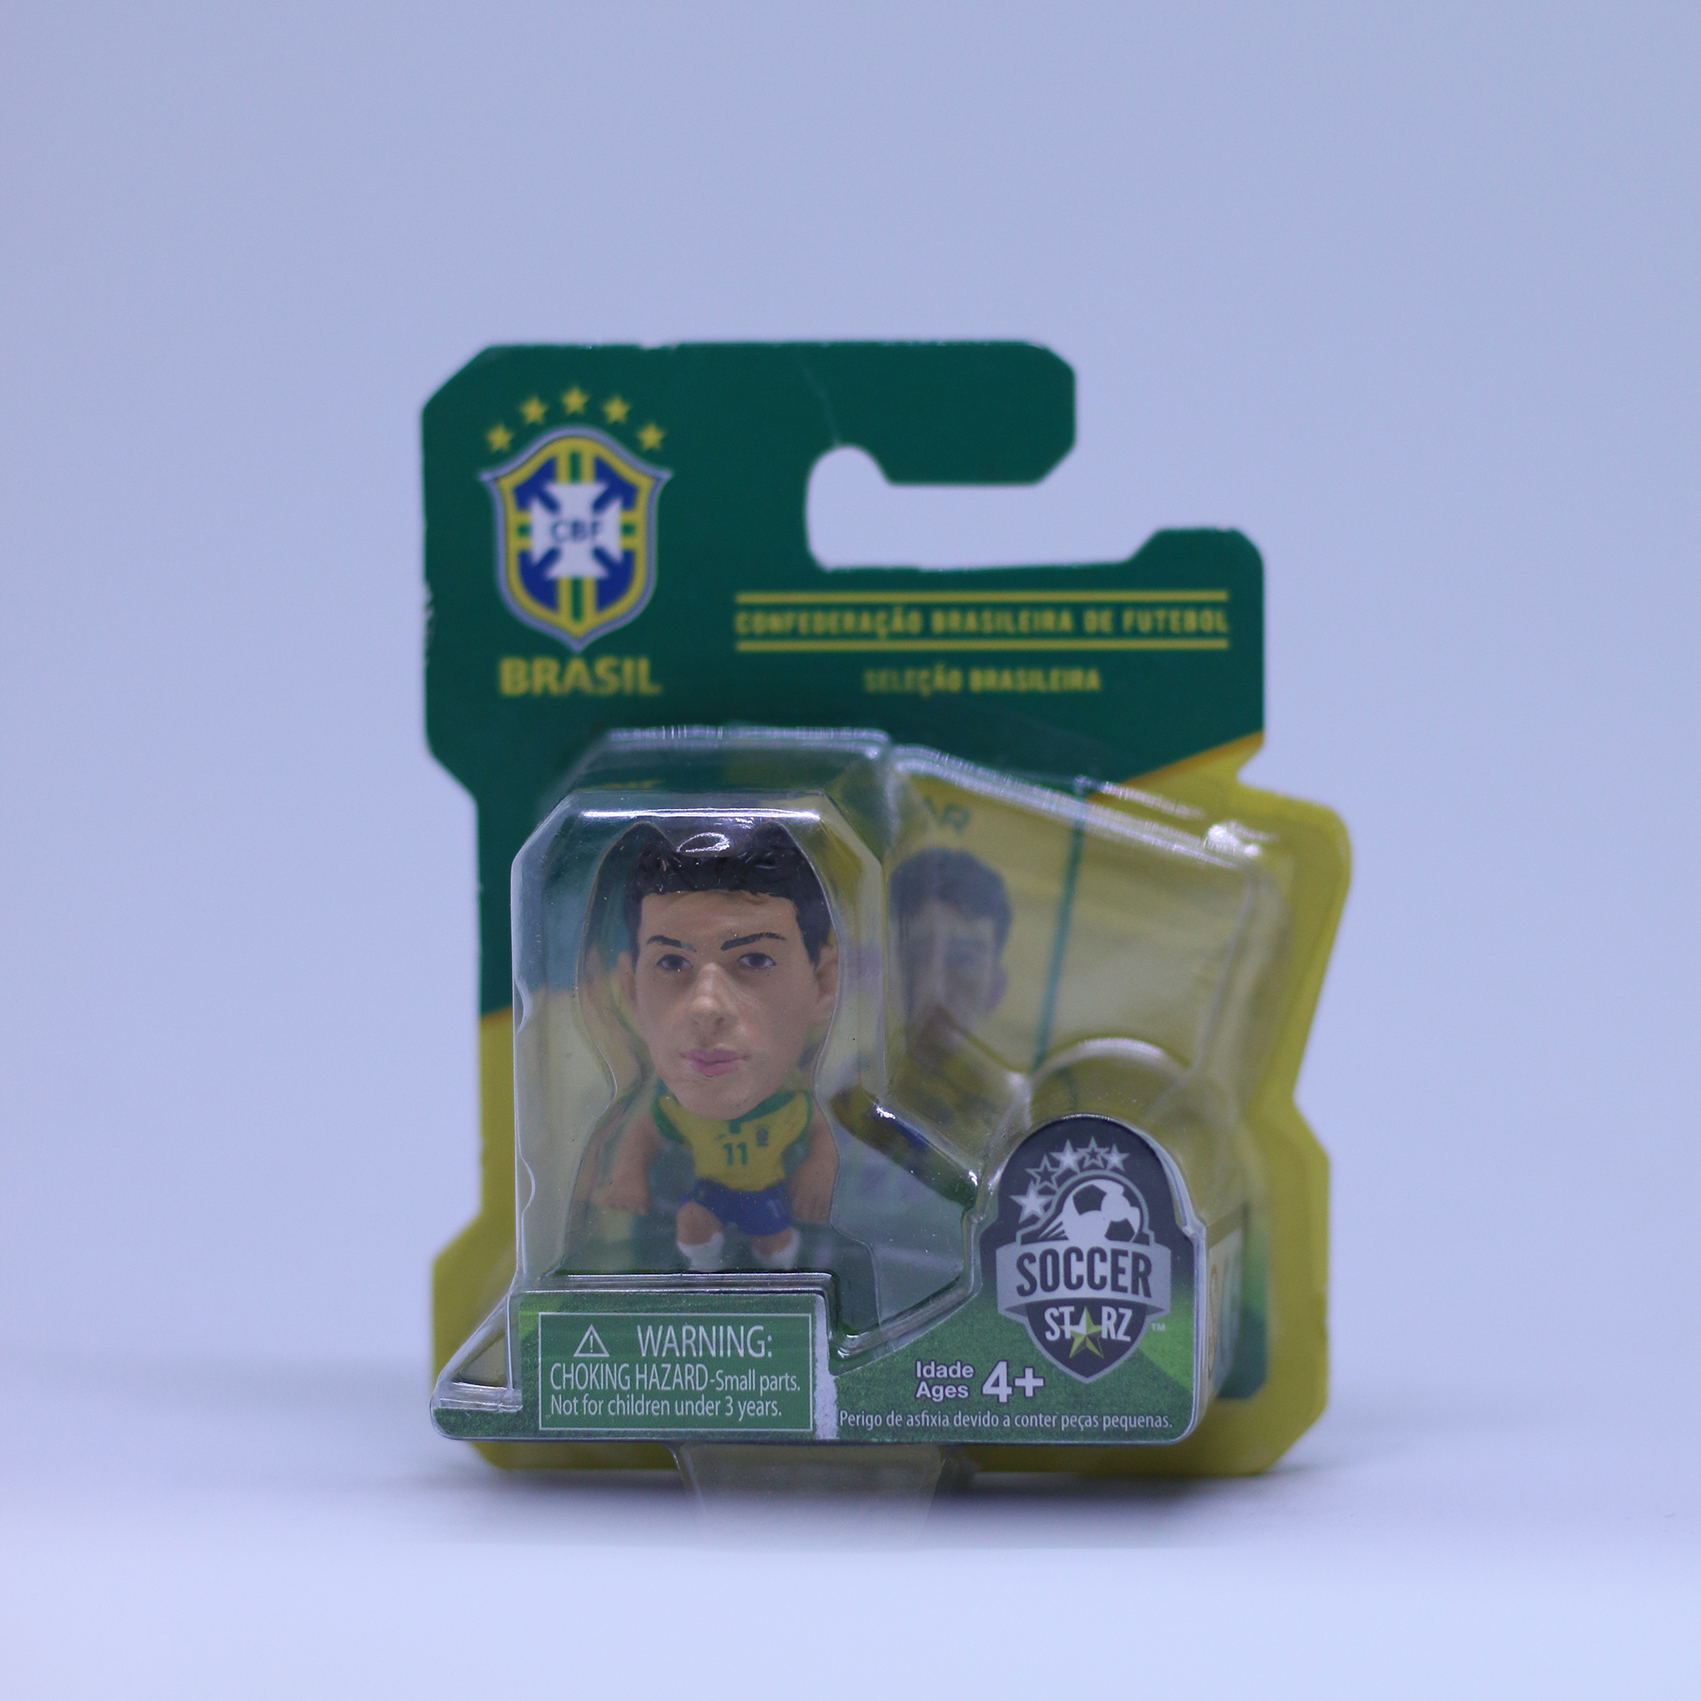 โมเดล นักฟุตบอล Oscar - Home Kit  ลิขสิทธิ์แท้ BRAZIL